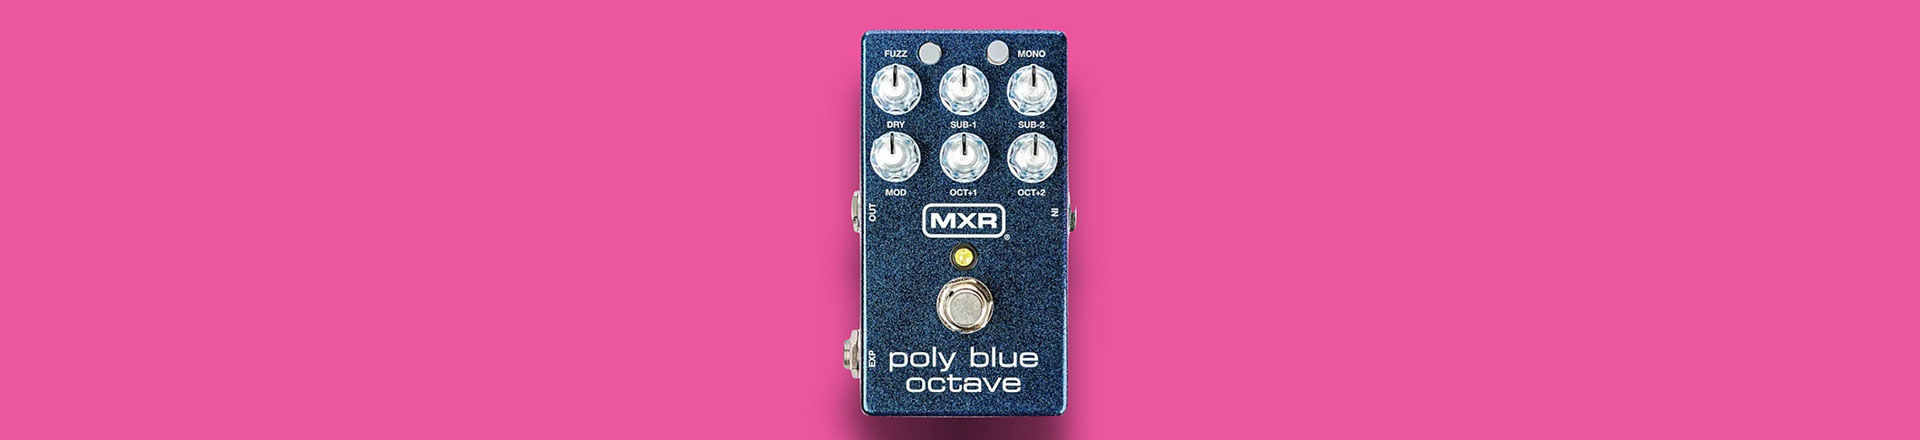 Nowy efekt gitarowy MXR inspirowany kultowym brzmieniem Blue Box 